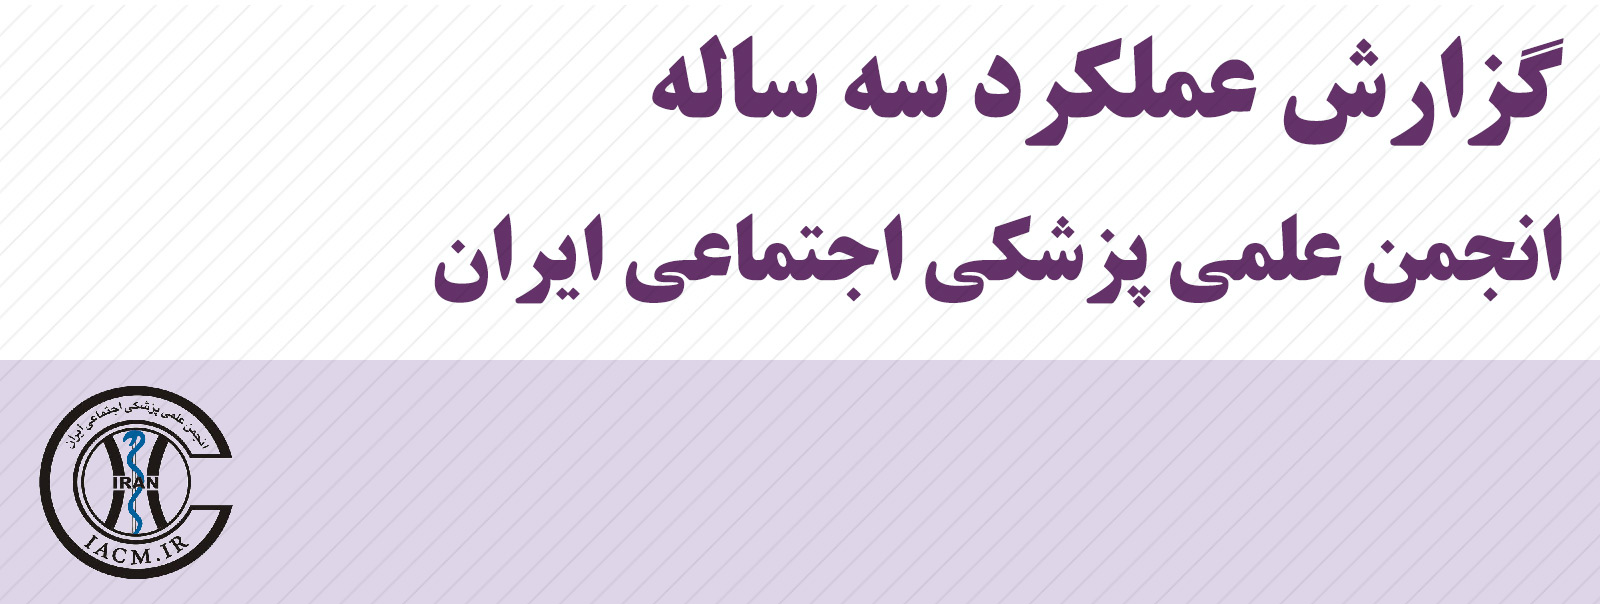 گزارش عملکرد سه ساله انجمن علمی پزشکی اجتماعی ایران